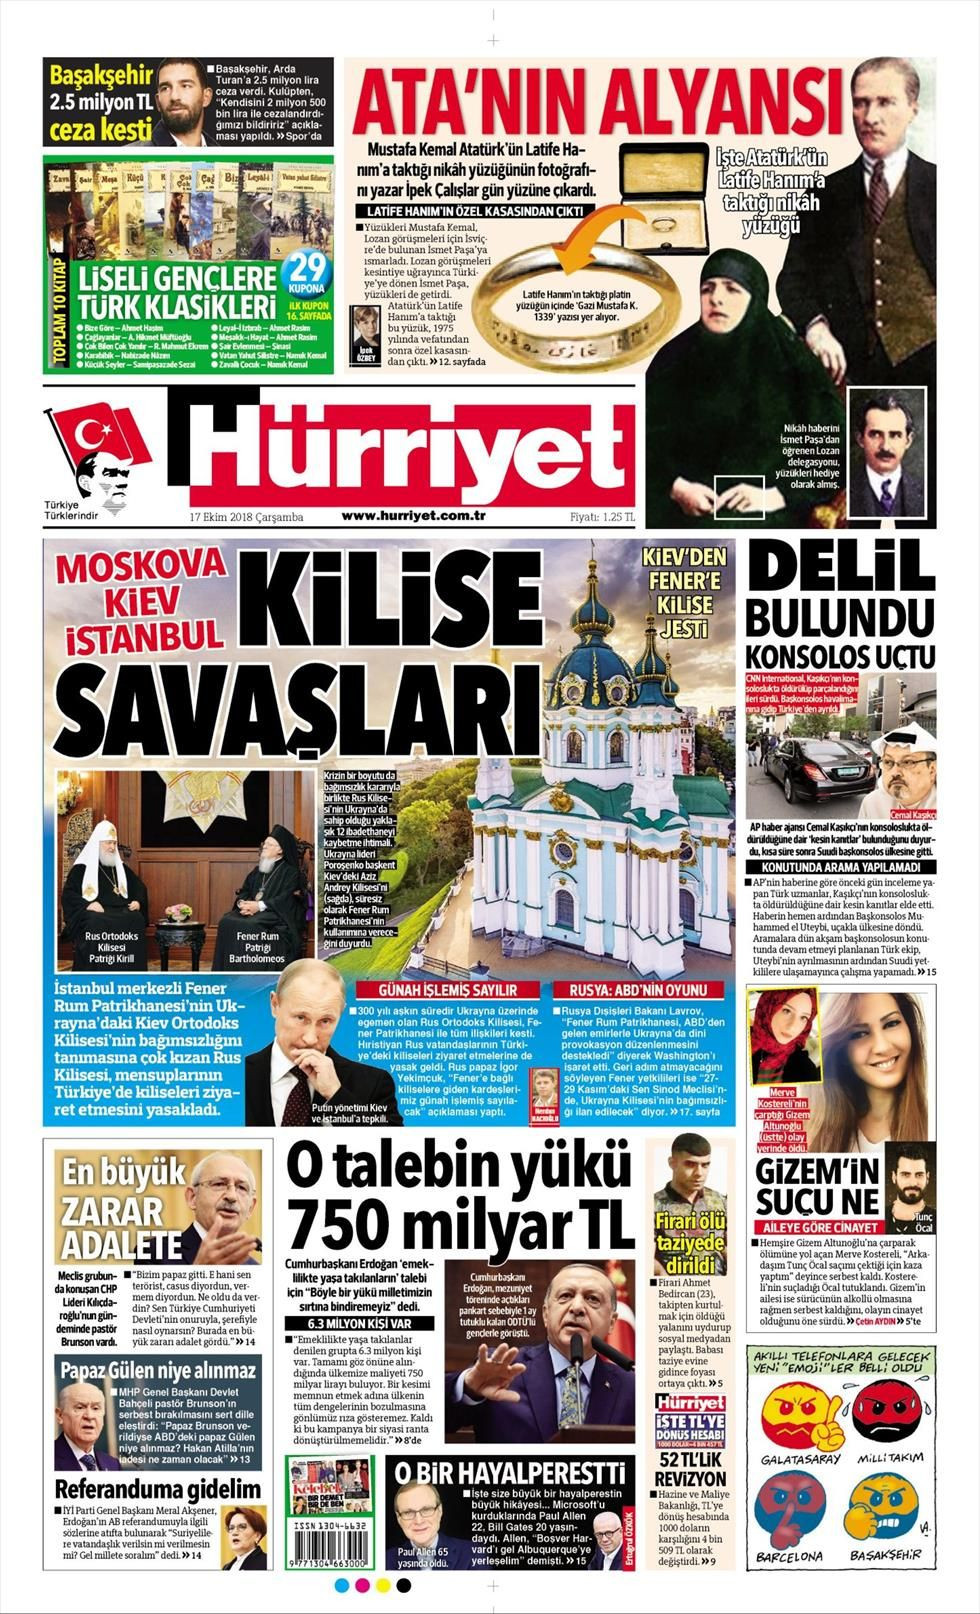 Hürriyet Gazetesi 17 Ekim 2018 Anasayfası - Haber3